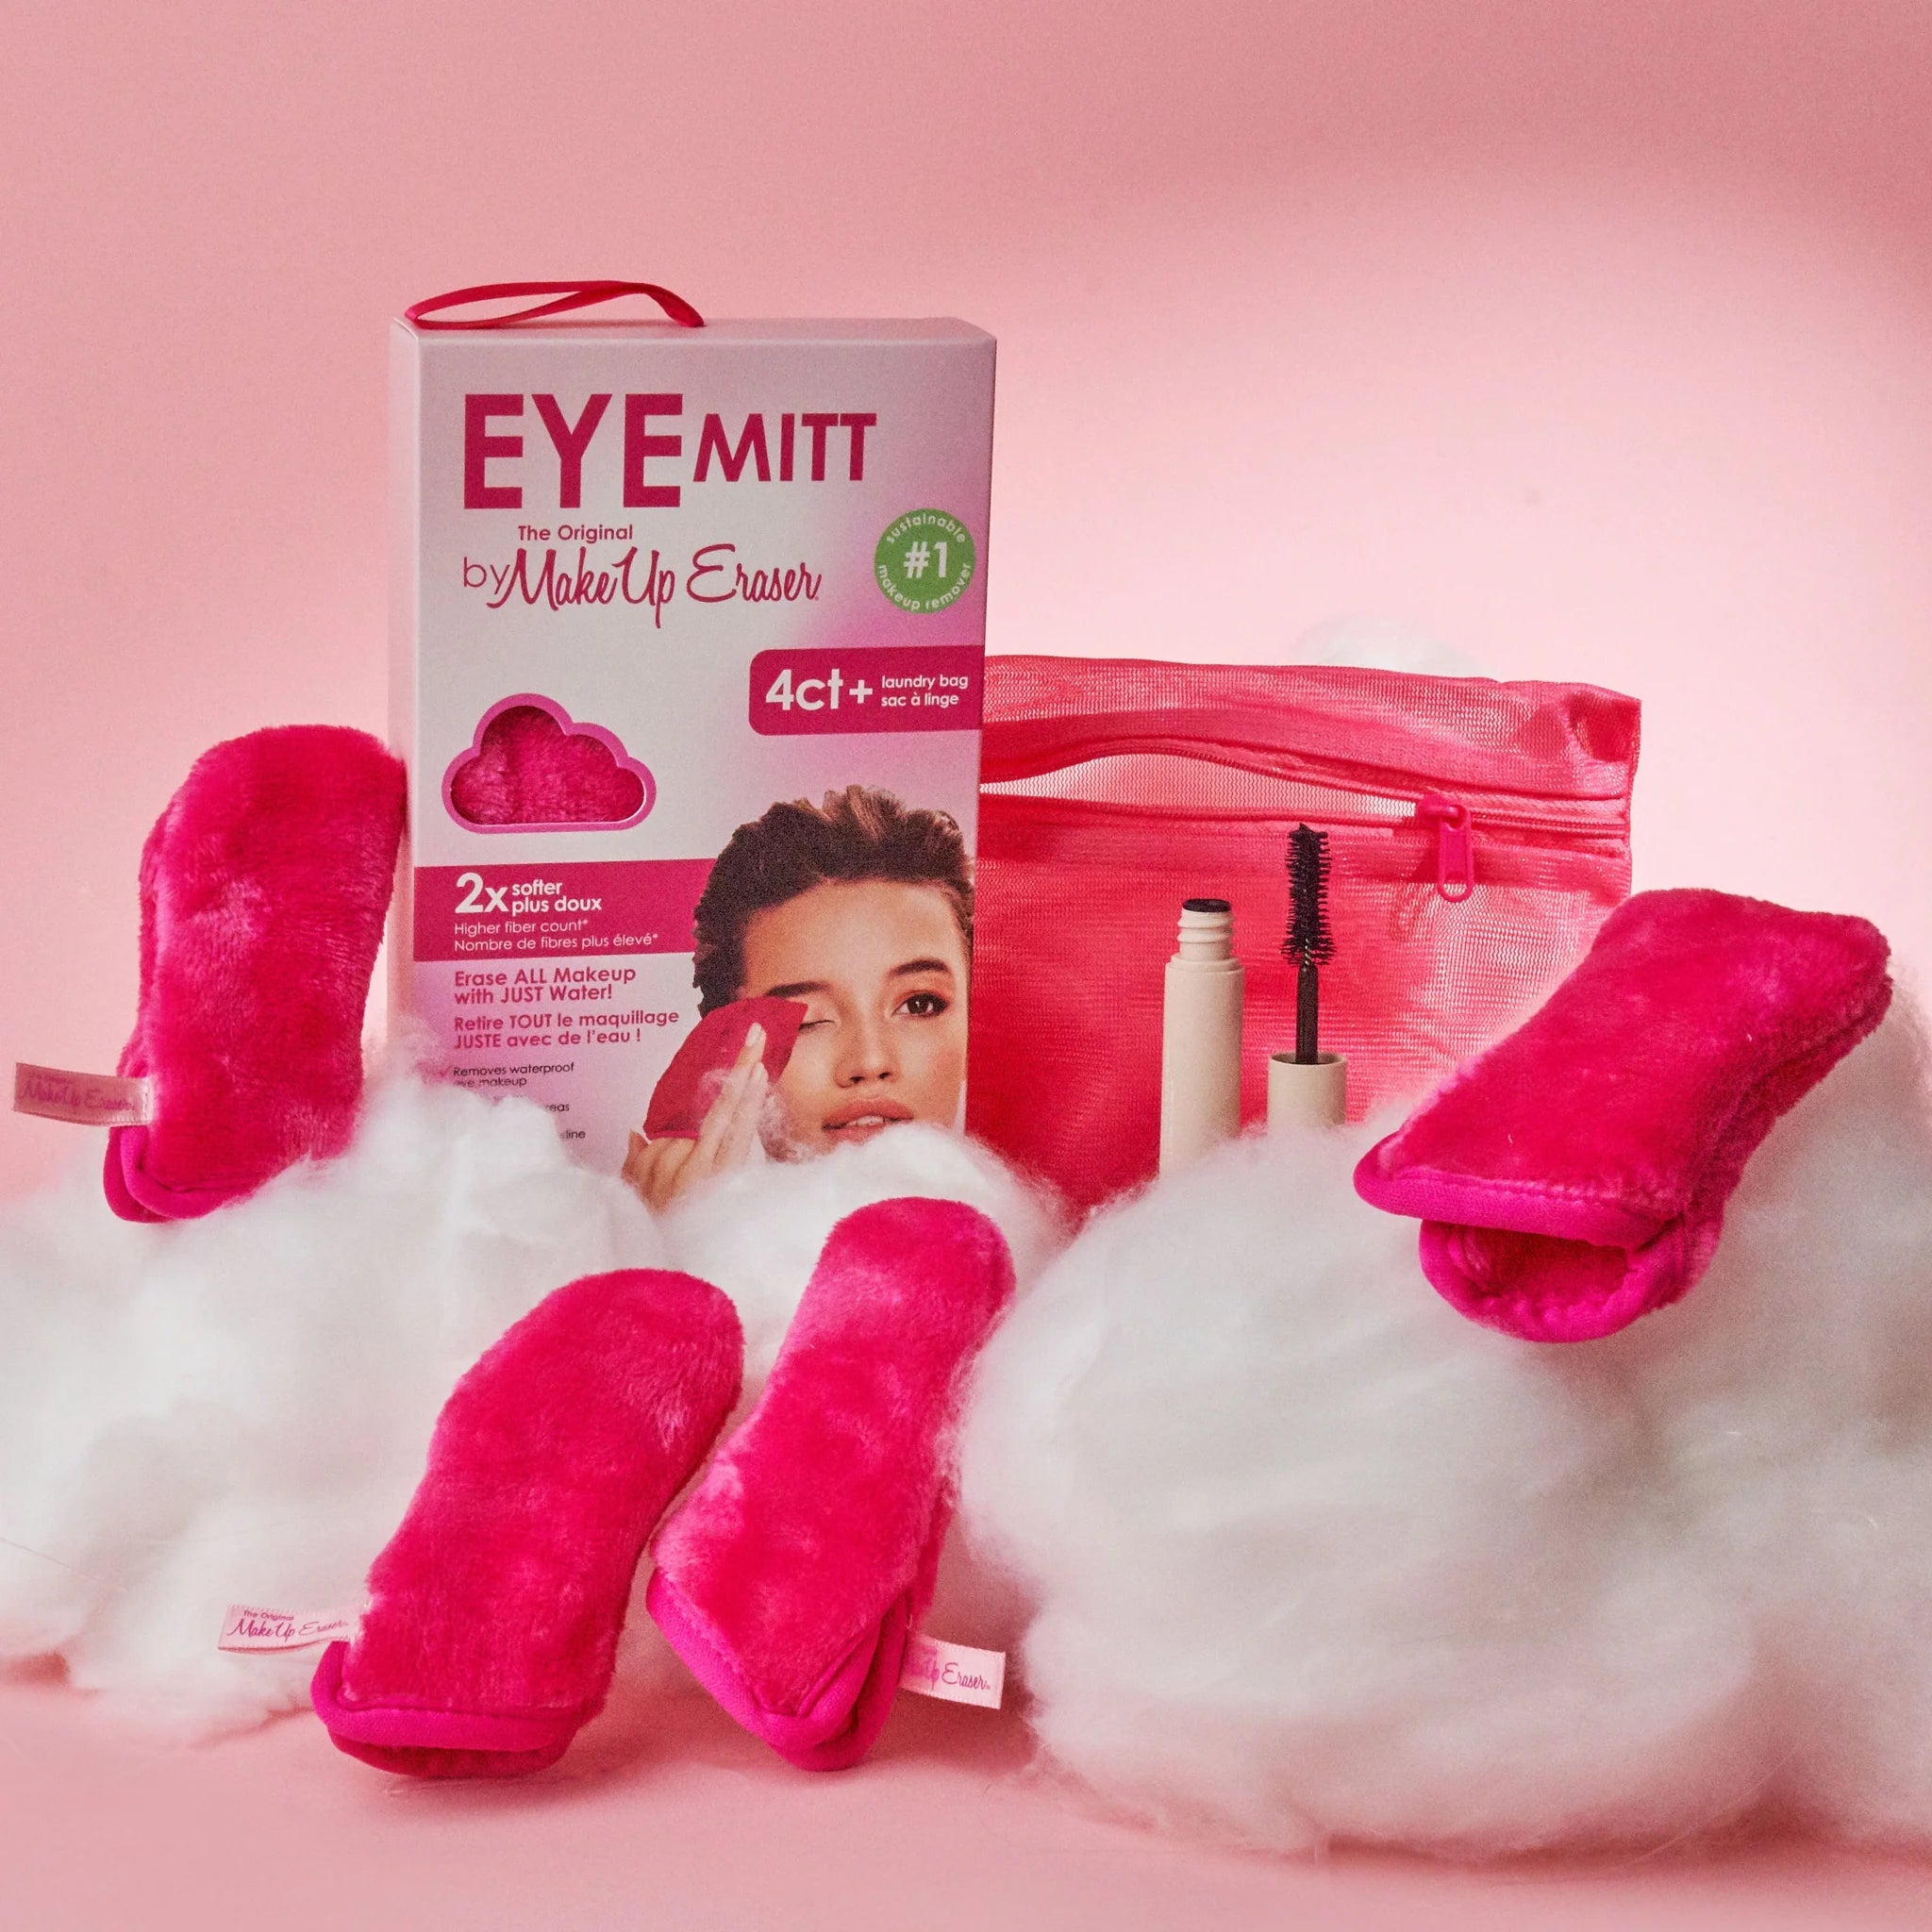 MakeUp Eraser - The Eye MITT